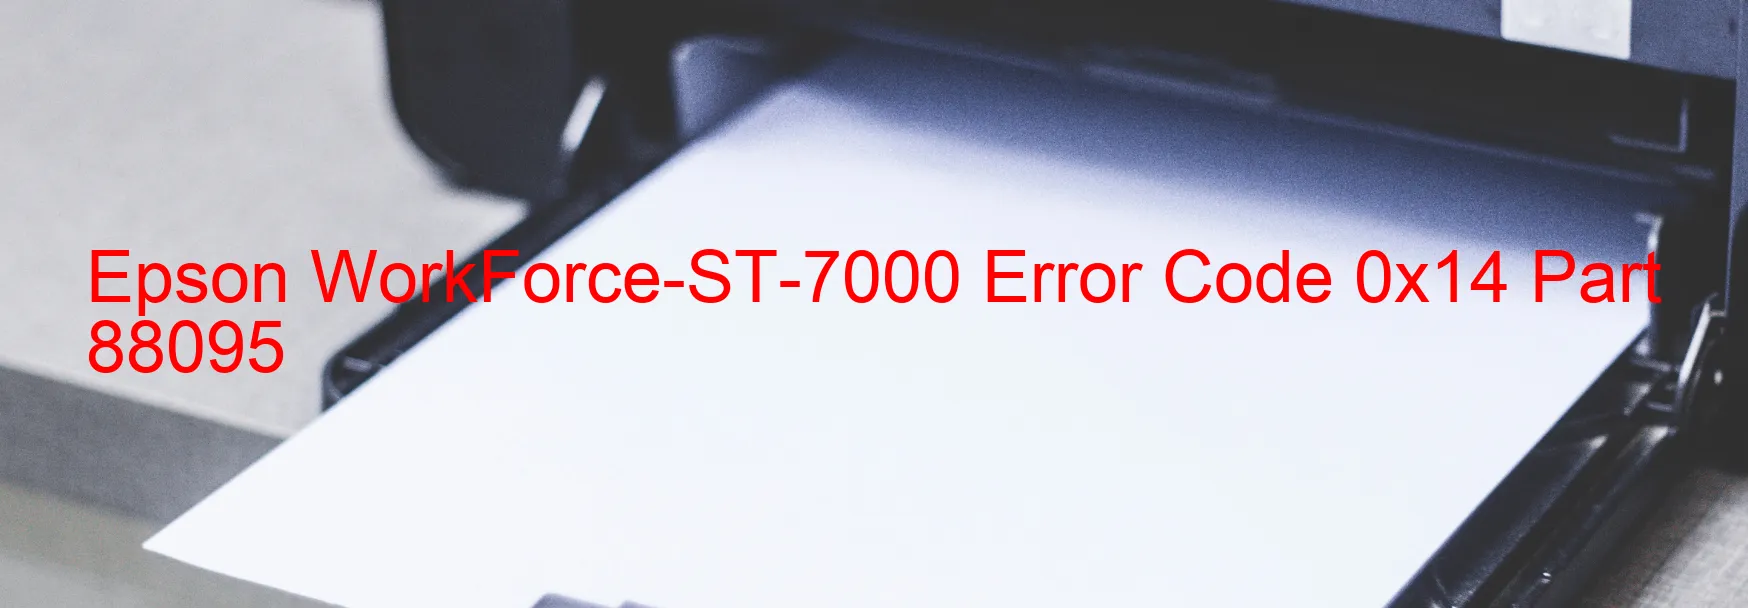 Epson WorkForce-ST-7000 Error Code 0x14 Part 88095